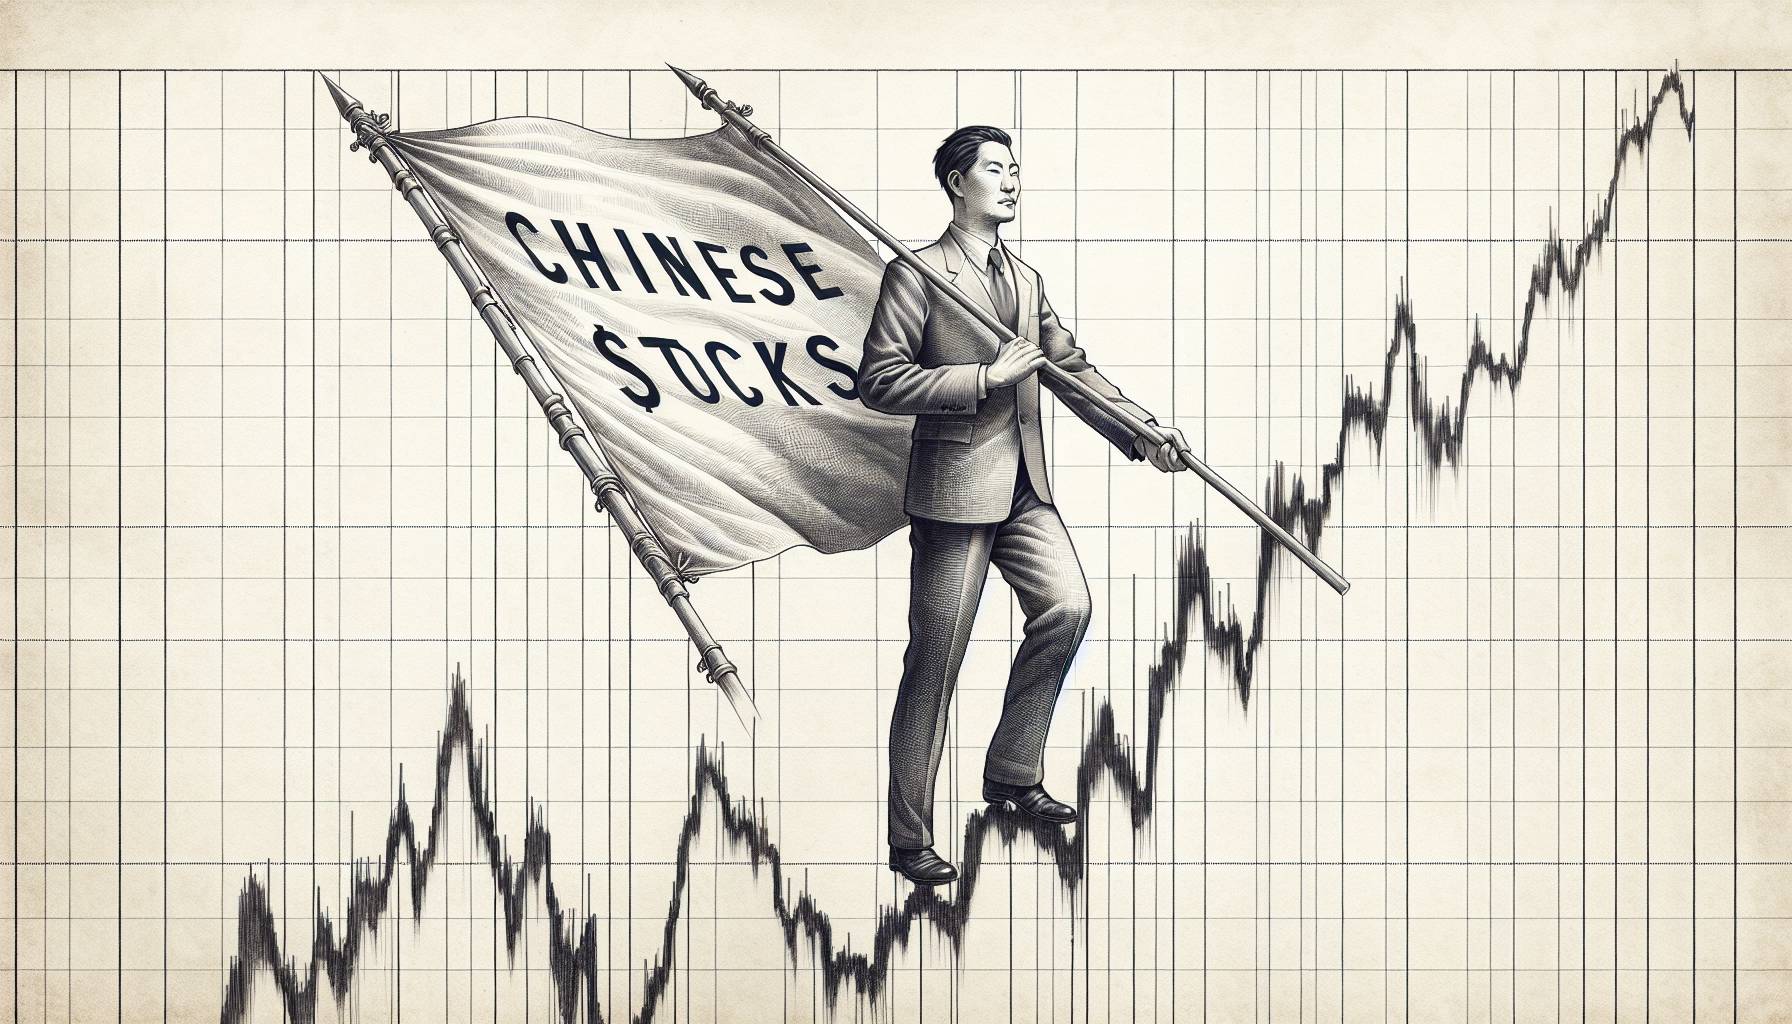 "Chinese Stocks Investment"